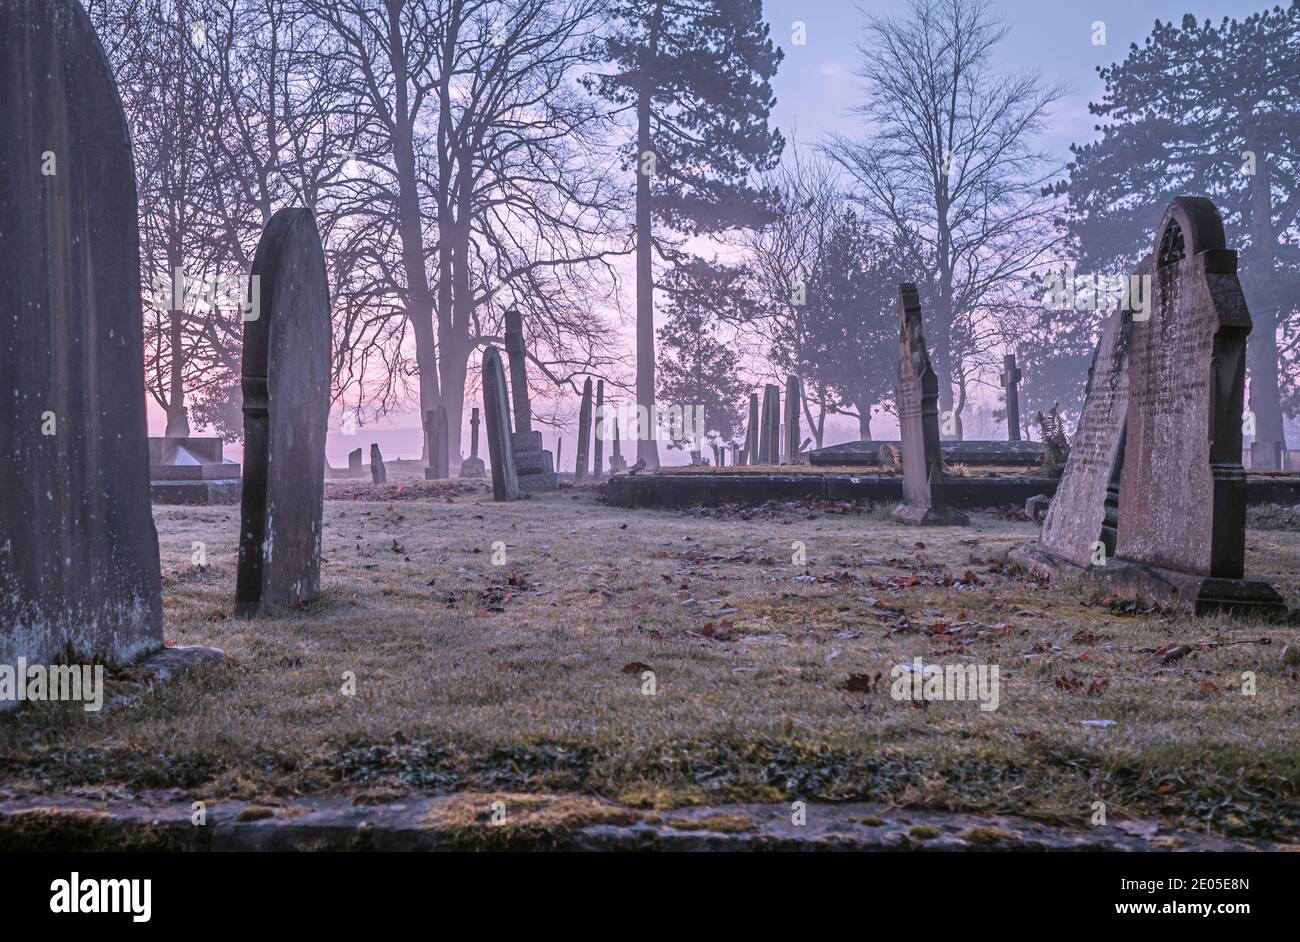 Una imagen solemne de lápidas en un patio de la iglesia en una mañana de mal humor. Foto de stock